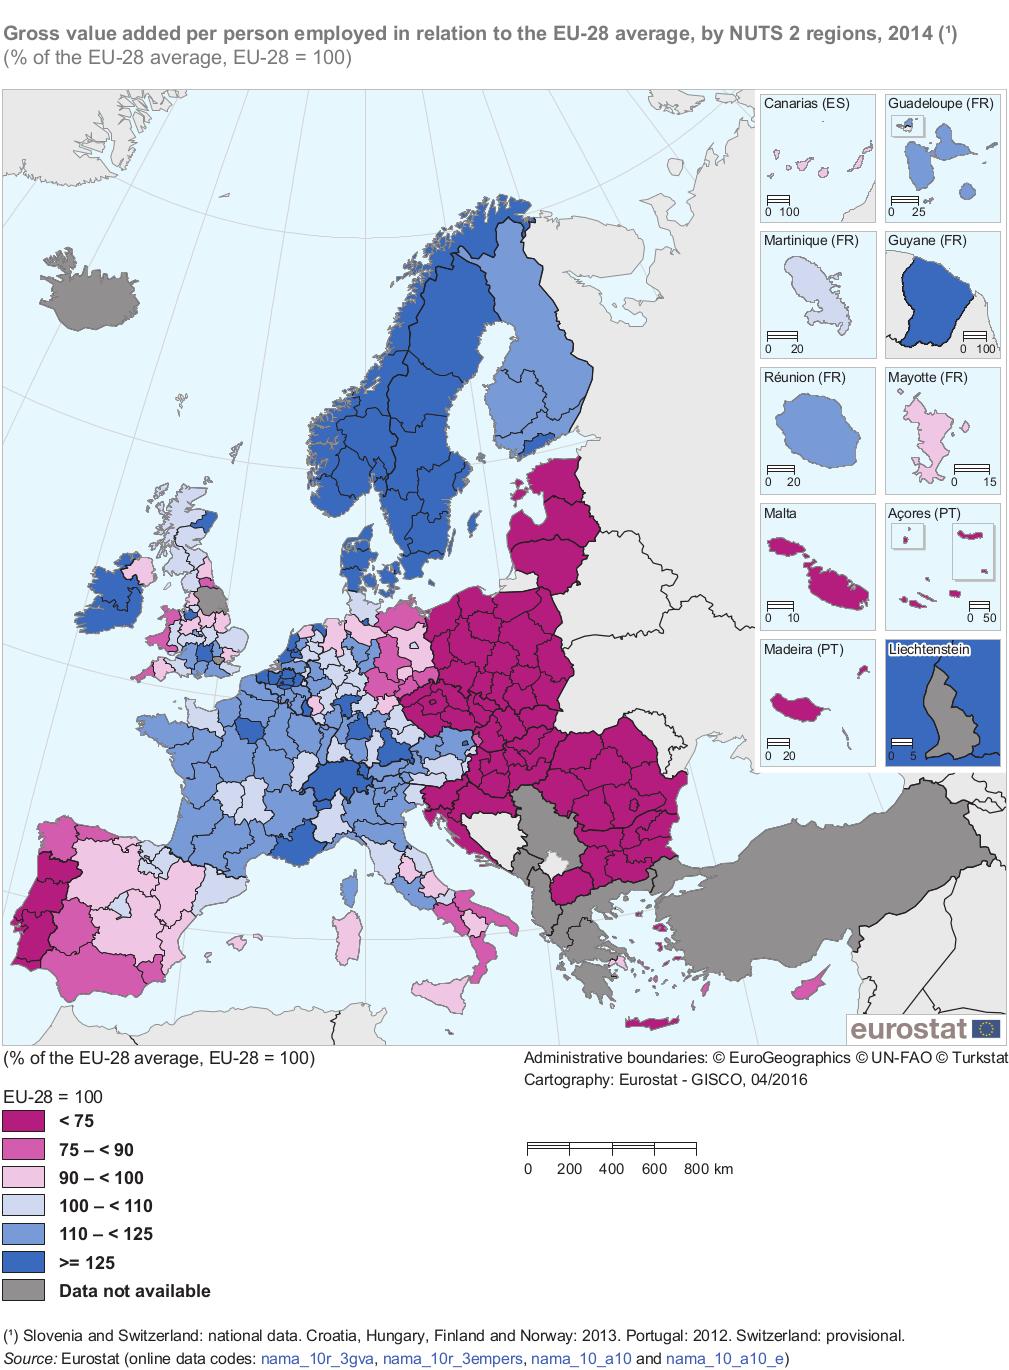 3. térkép: Az egy alkalmazottra vetített bruttó hozzáadott érték az EU-28 átlagához viszonyítva, NUTS 2 régiók szerinti bontásban, 2014